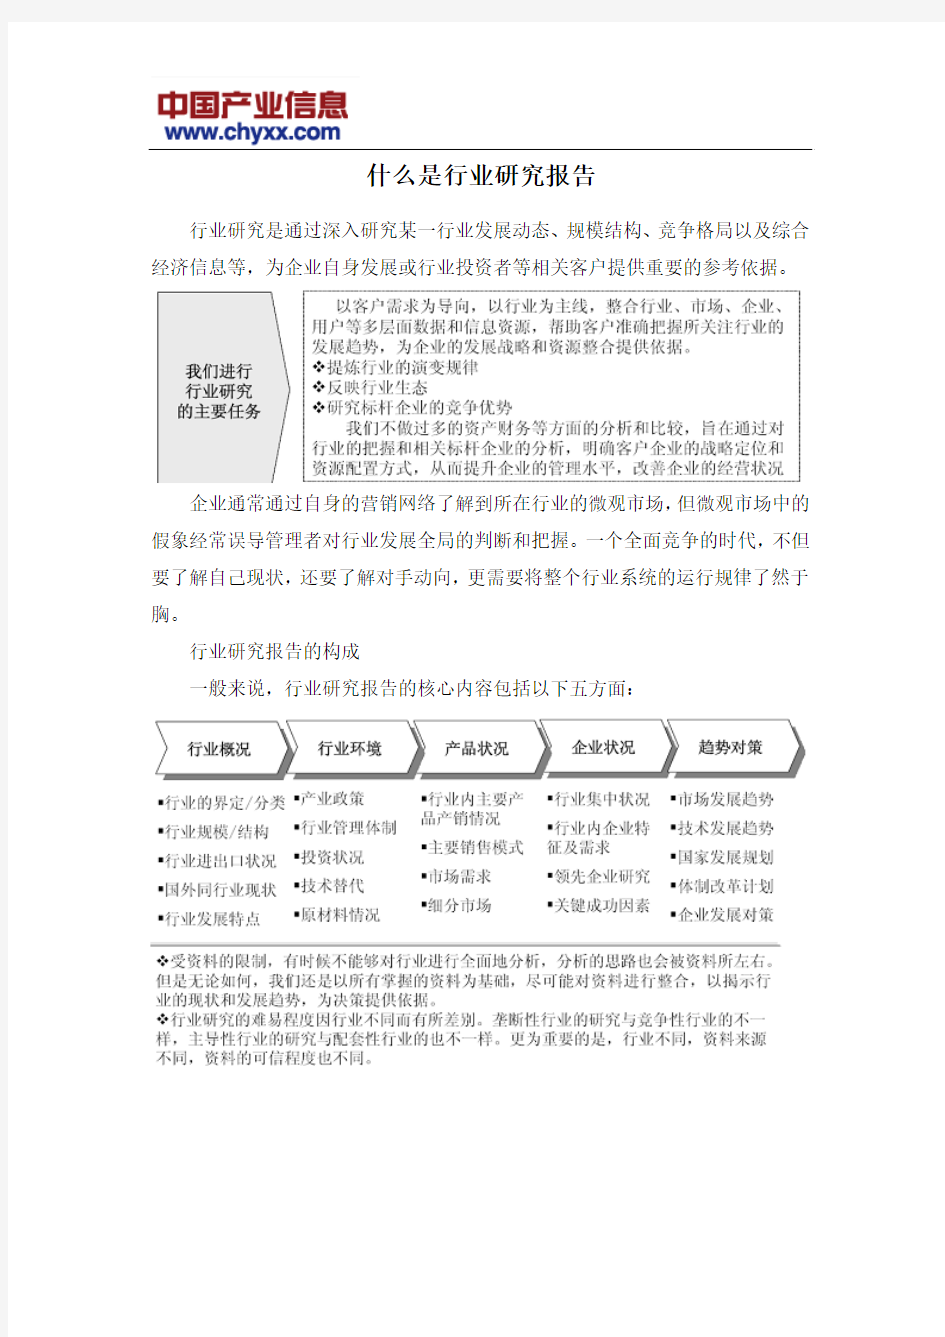 2015-2020年中国氯乙烷市场运营态势报告